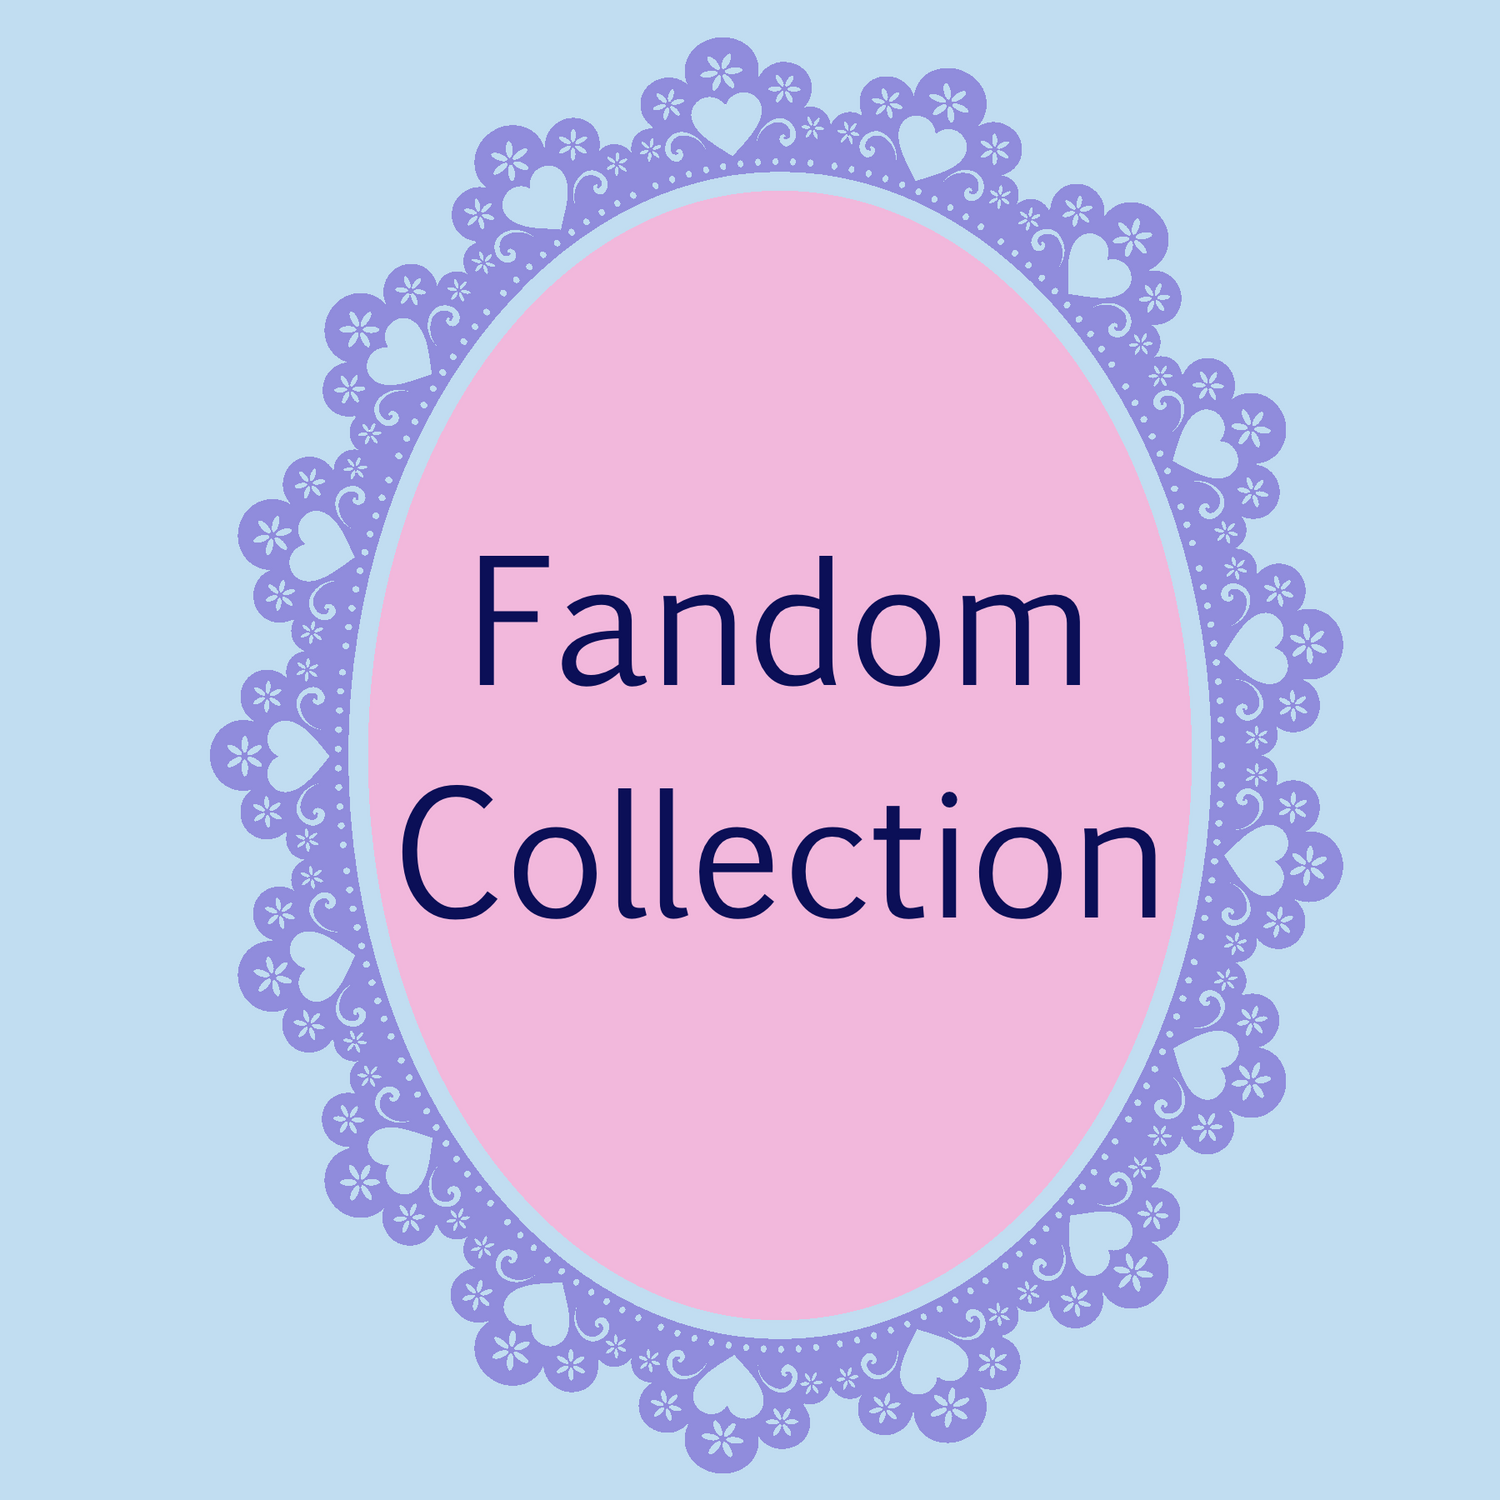 Fandom Collection